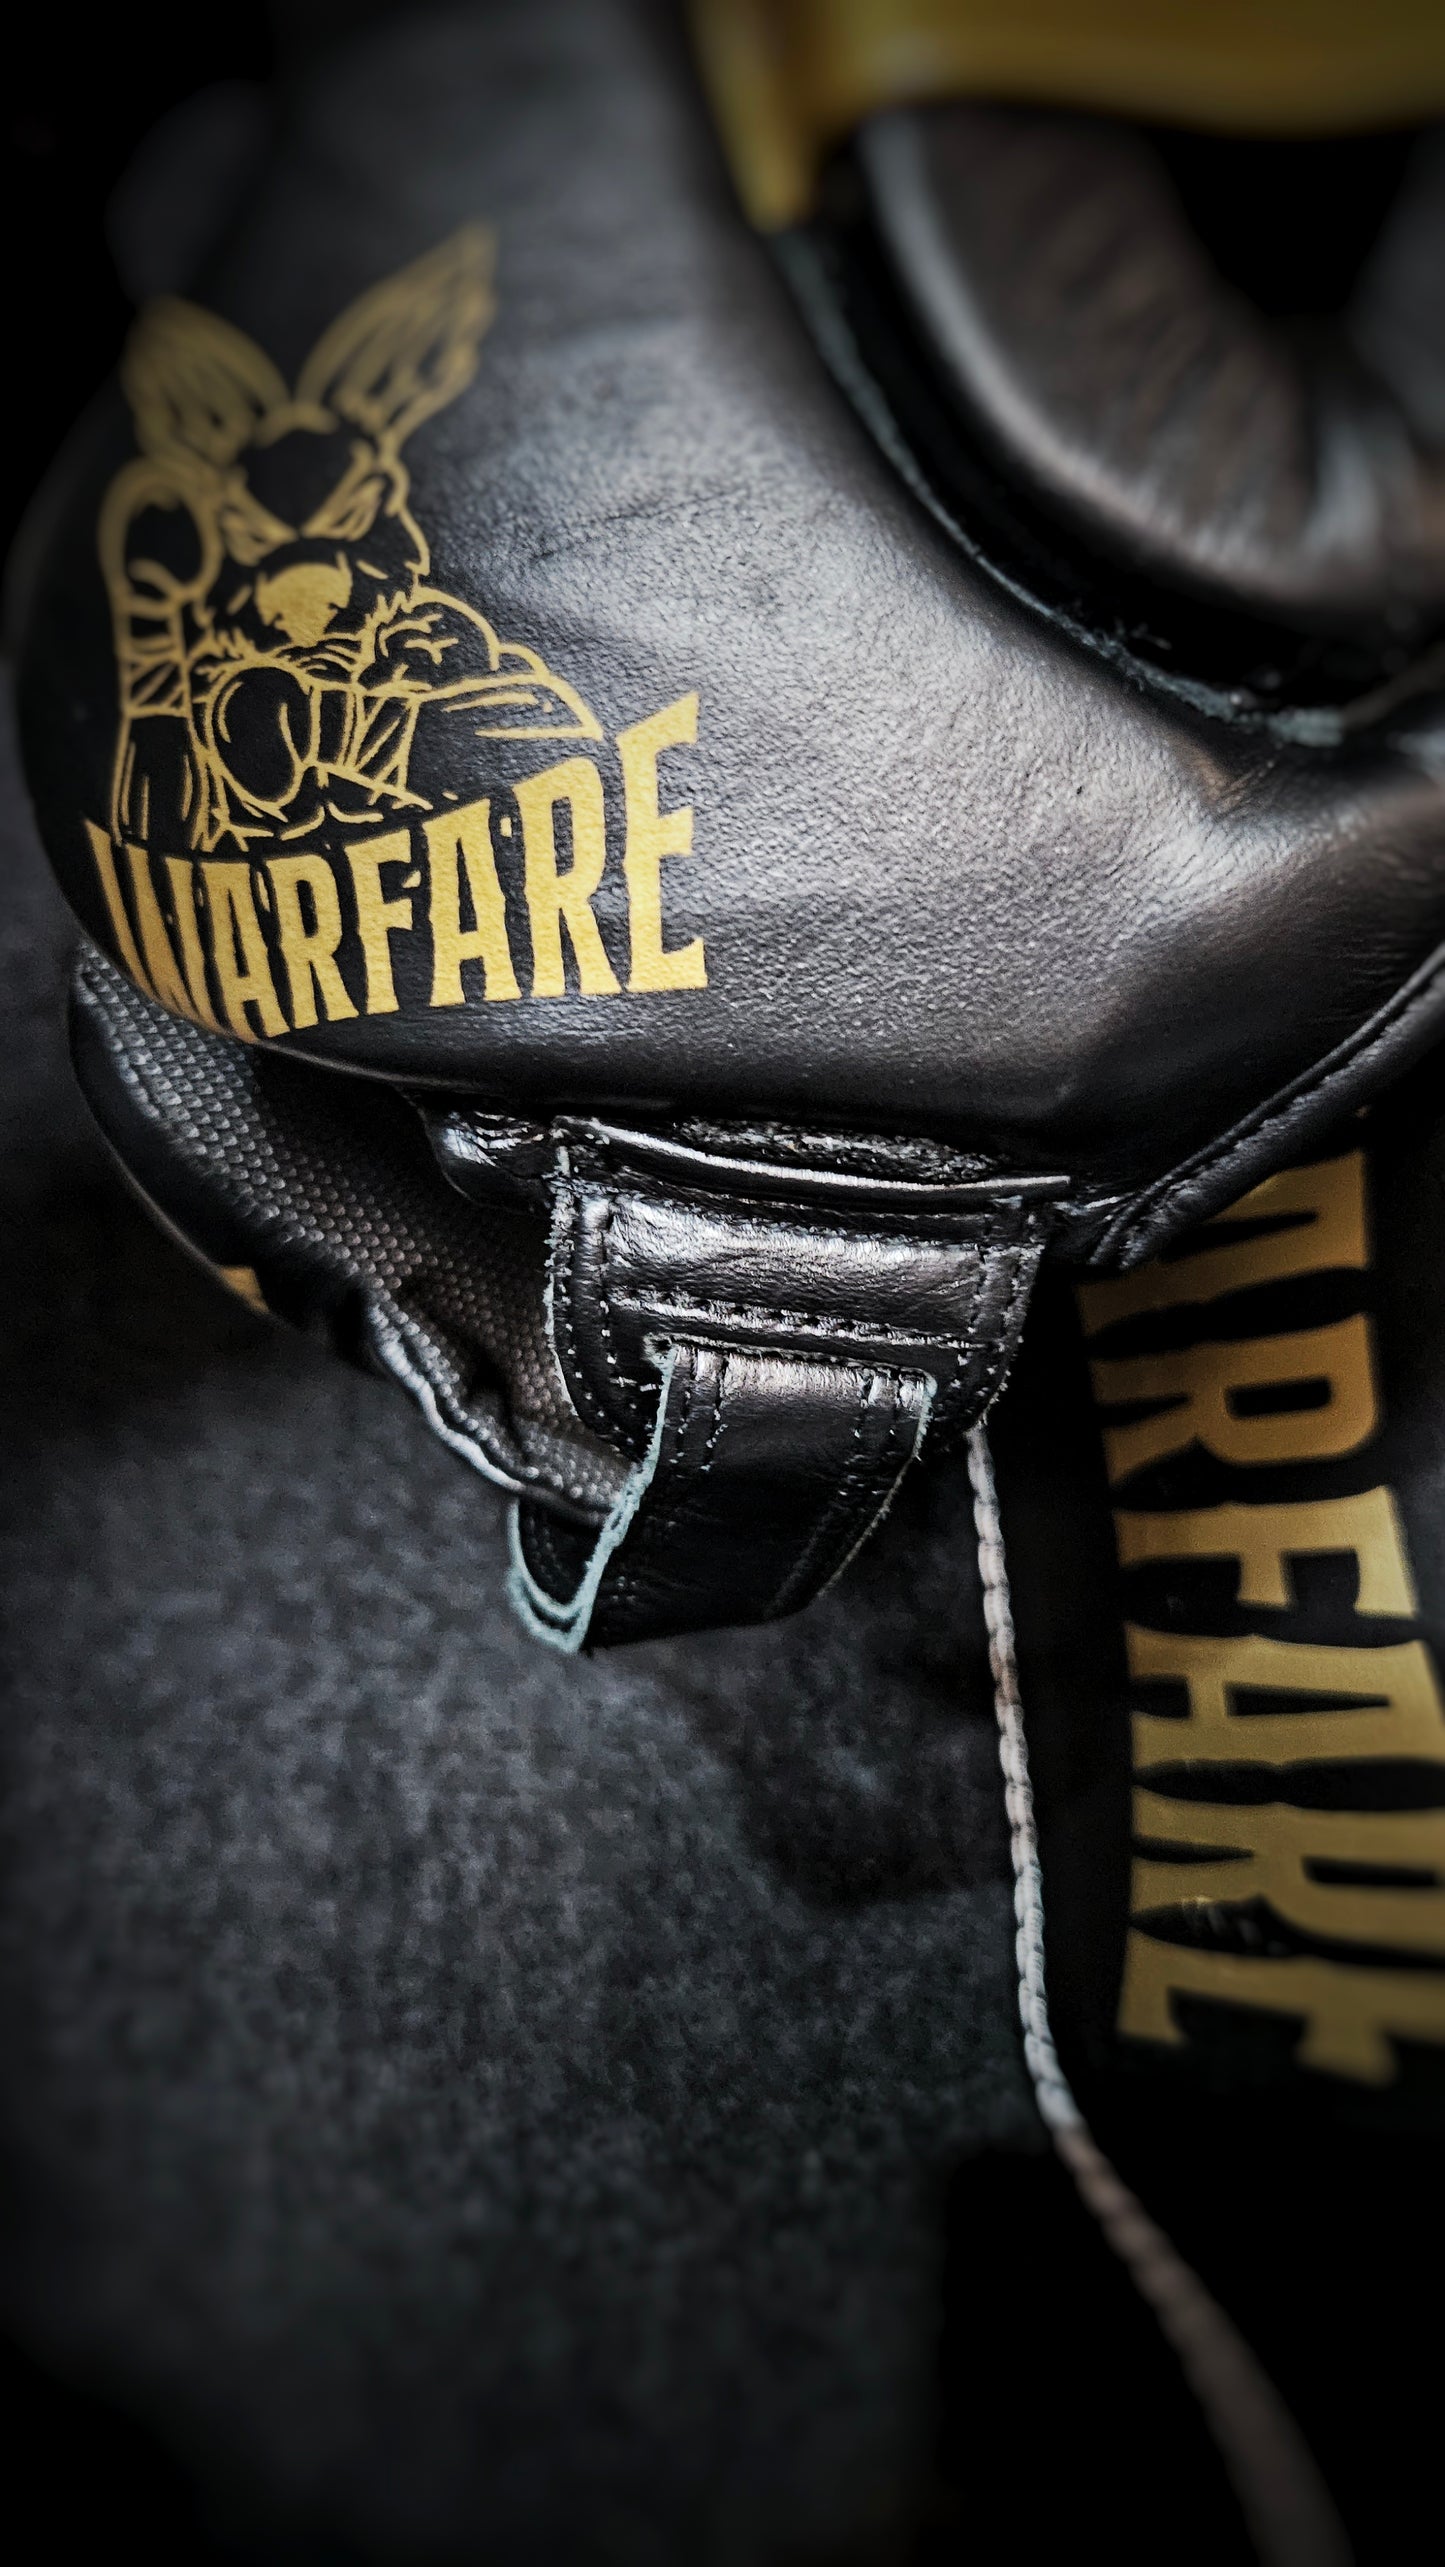 Warfare Chin Strap Head Gear